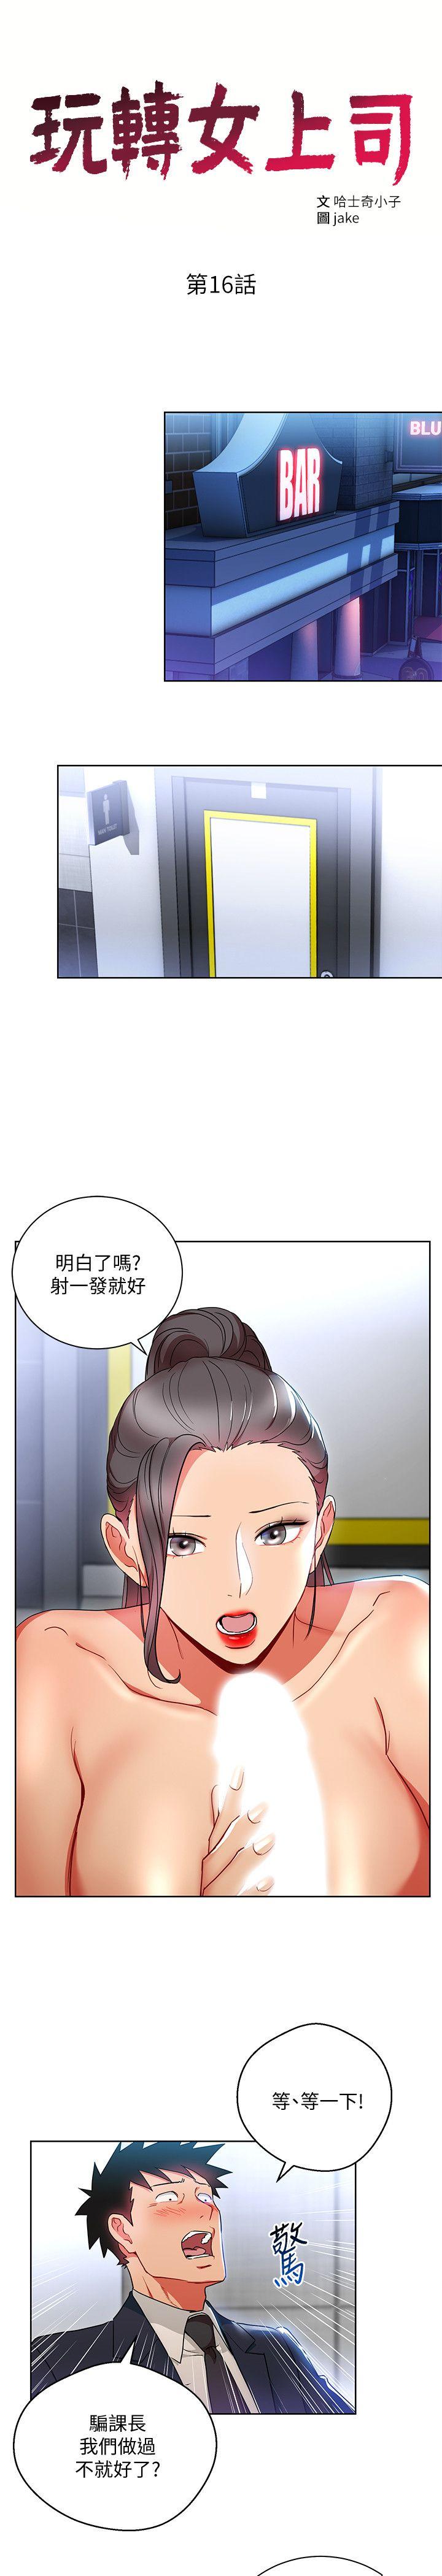 韩国污漫画 玩轉女上司 第16话-笨手笨脚反而让我更爽 3